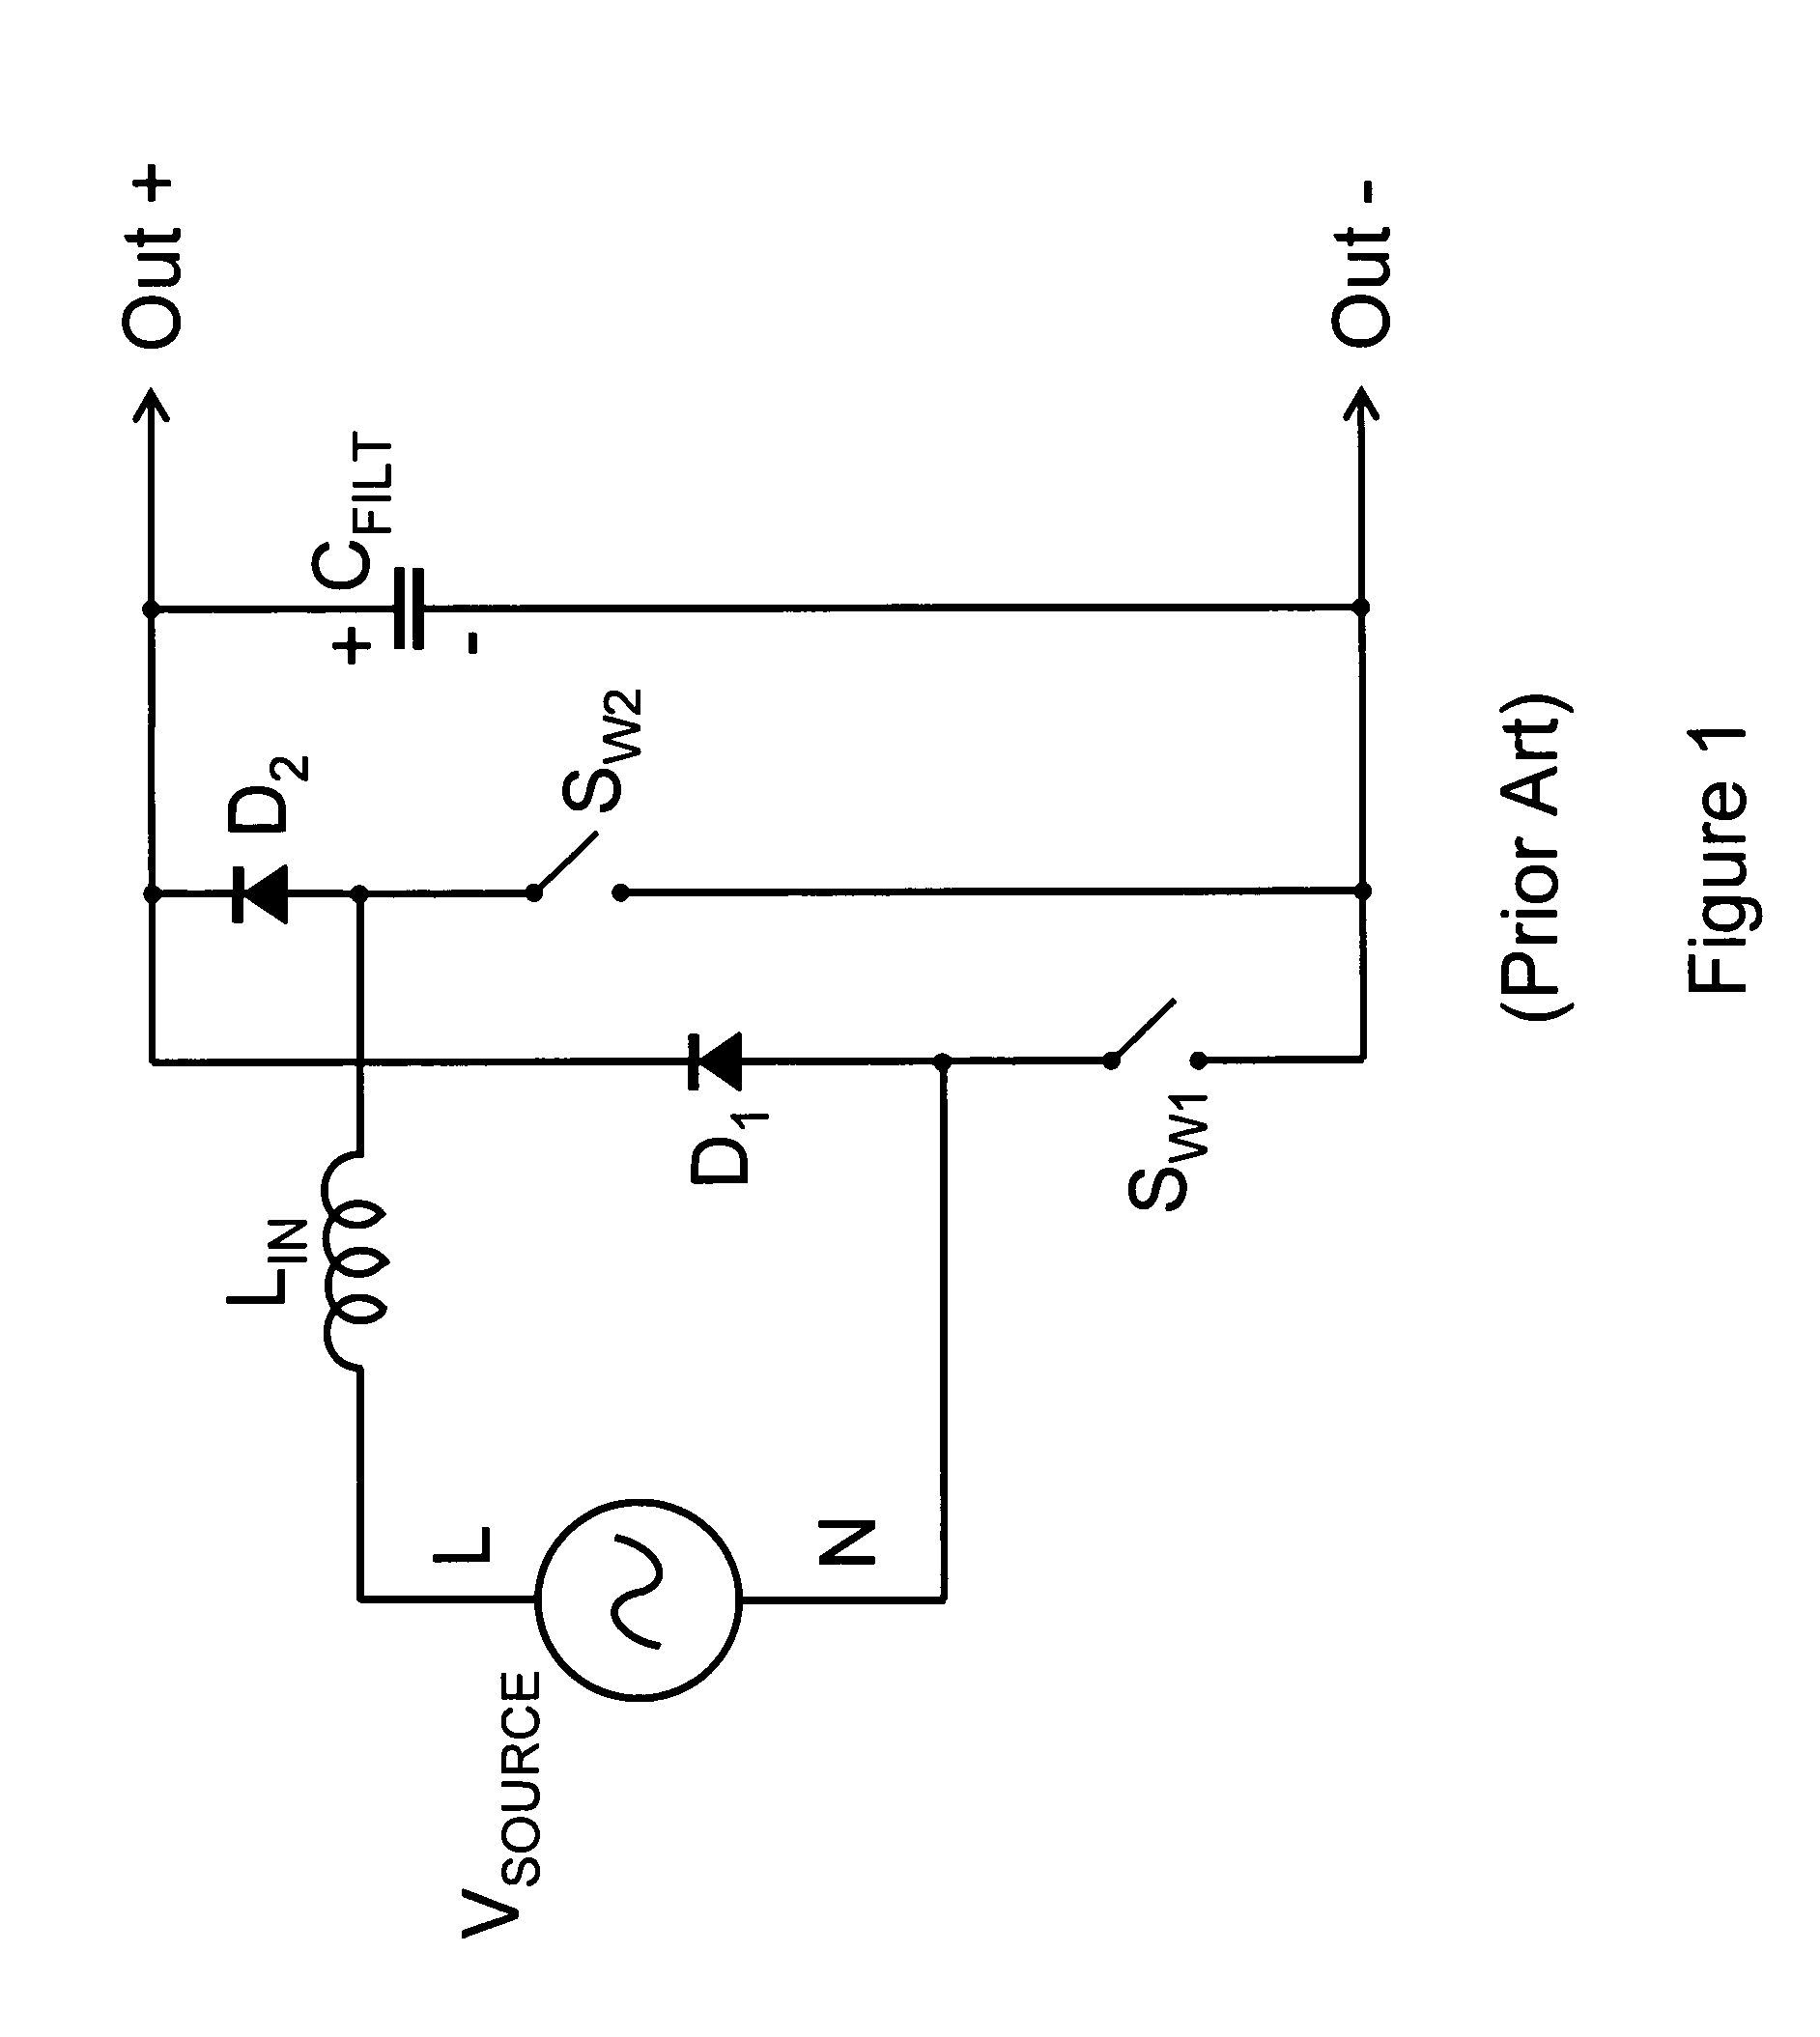 Power converter circuits having bipolar outputs and bipolar inputs